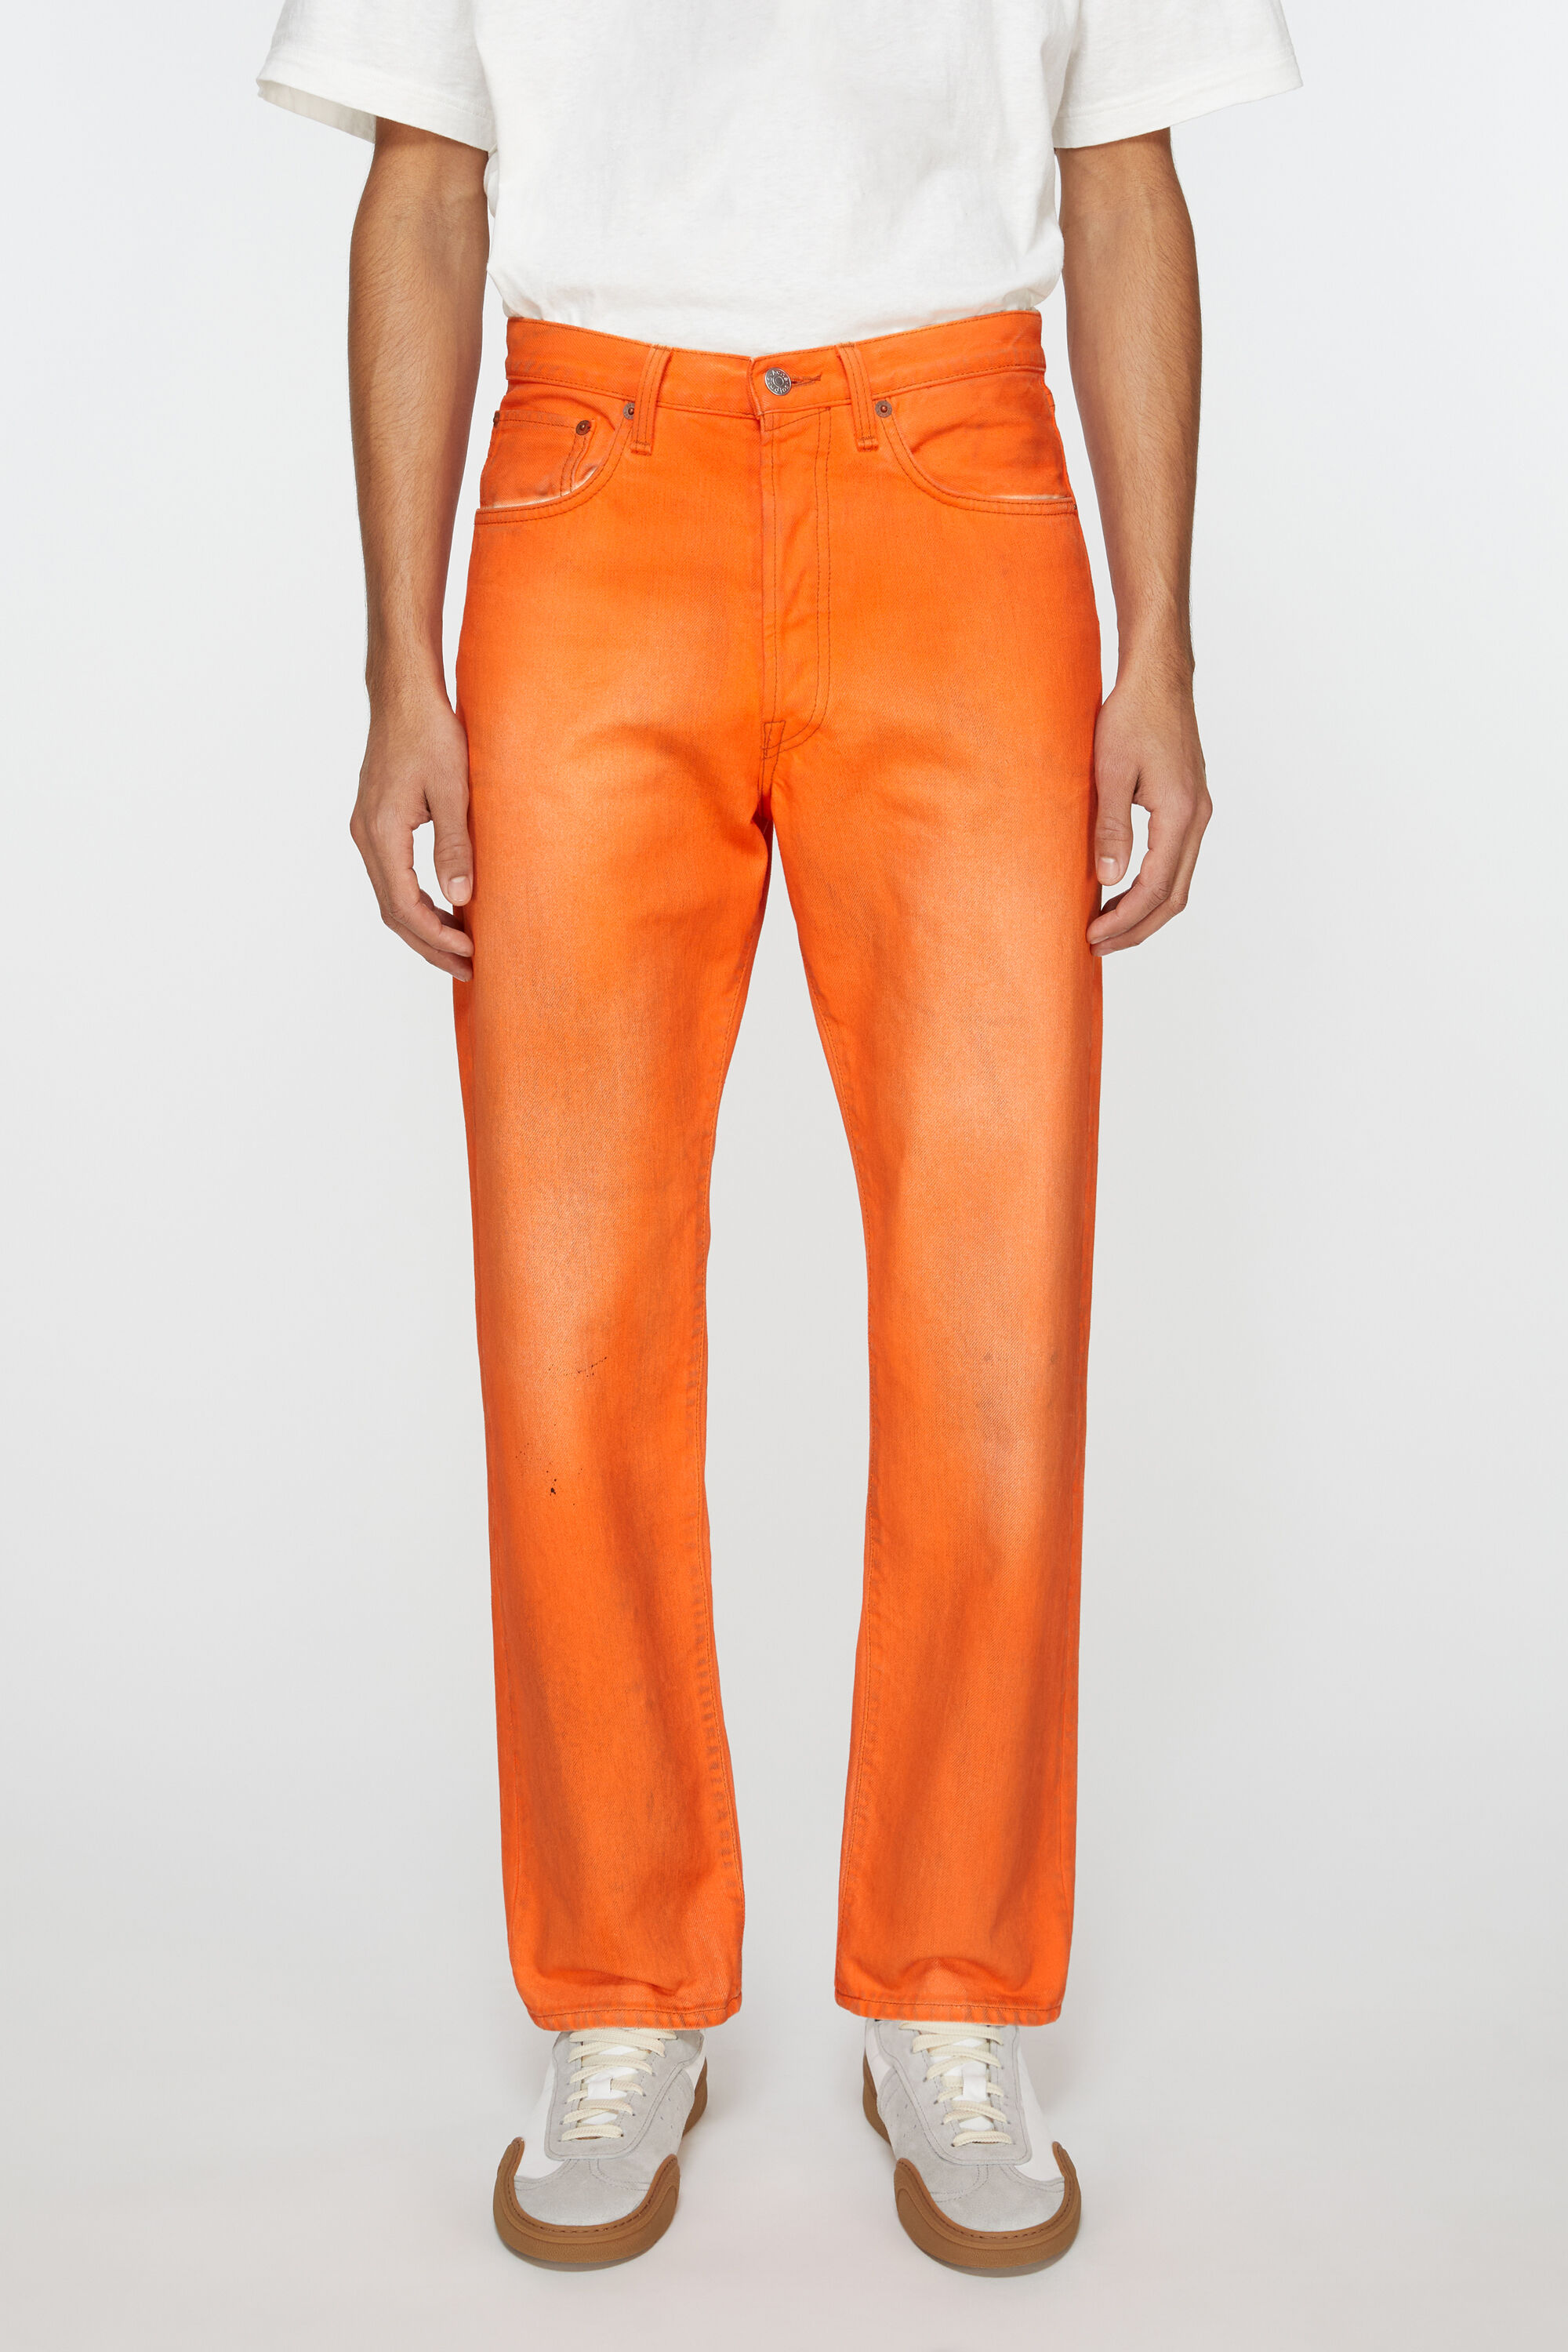 아크네 스튜디오 Acne Studios Relaxed fit jeans - 2003 - Neon orange